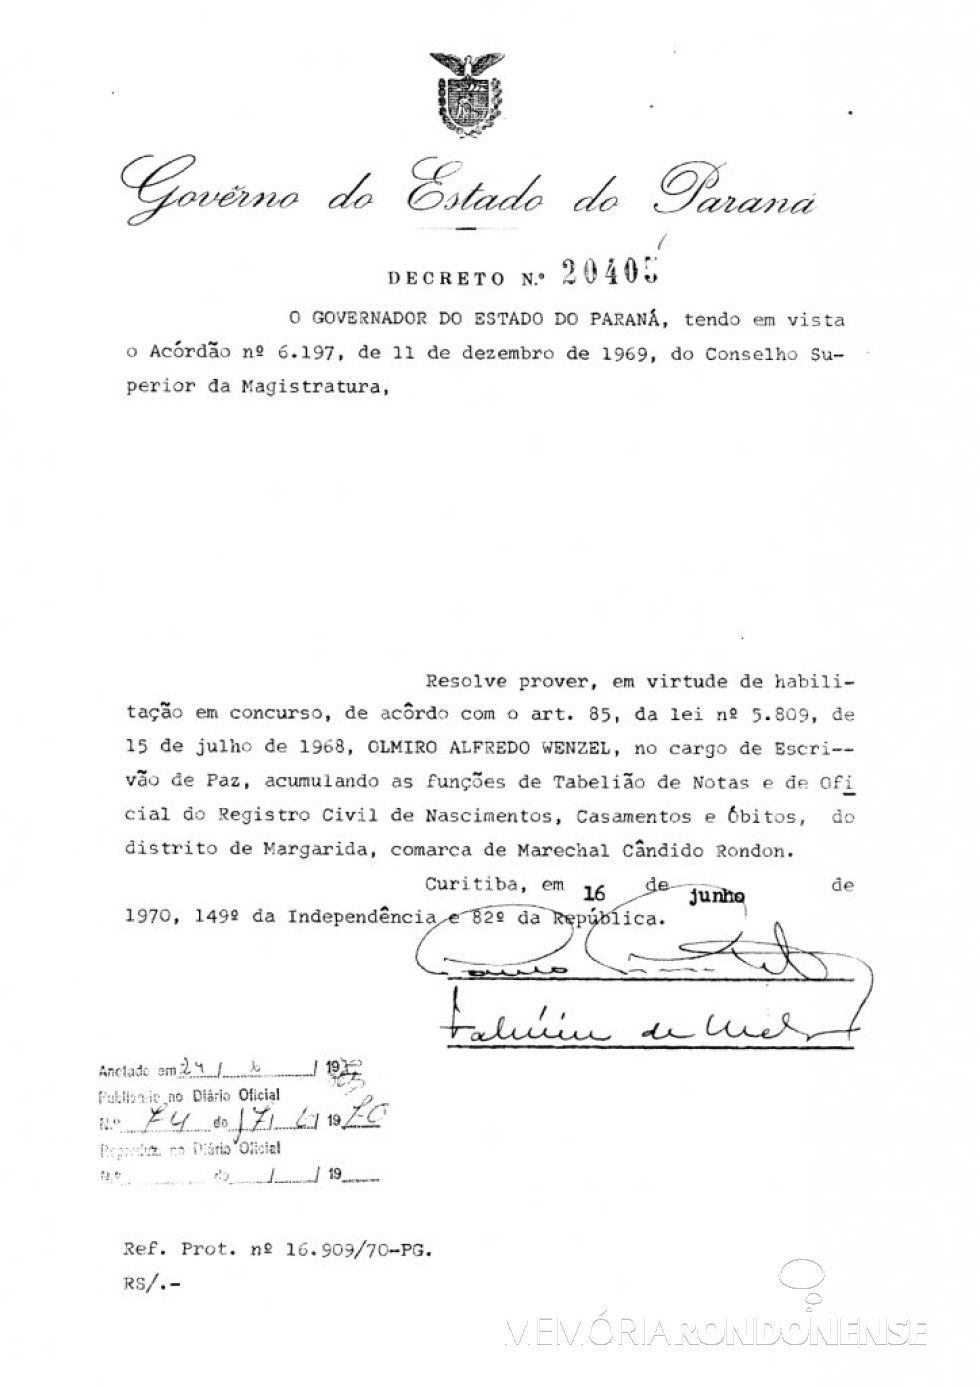 Cópia do Decreto Estadual nº 20.405 que nomeou Olmiro Wenzel para as funções de cartorário no distrito rondonense de Margarida.
Imagem: Acervo Arquivo Público do Paraná - FOTO 3 - 